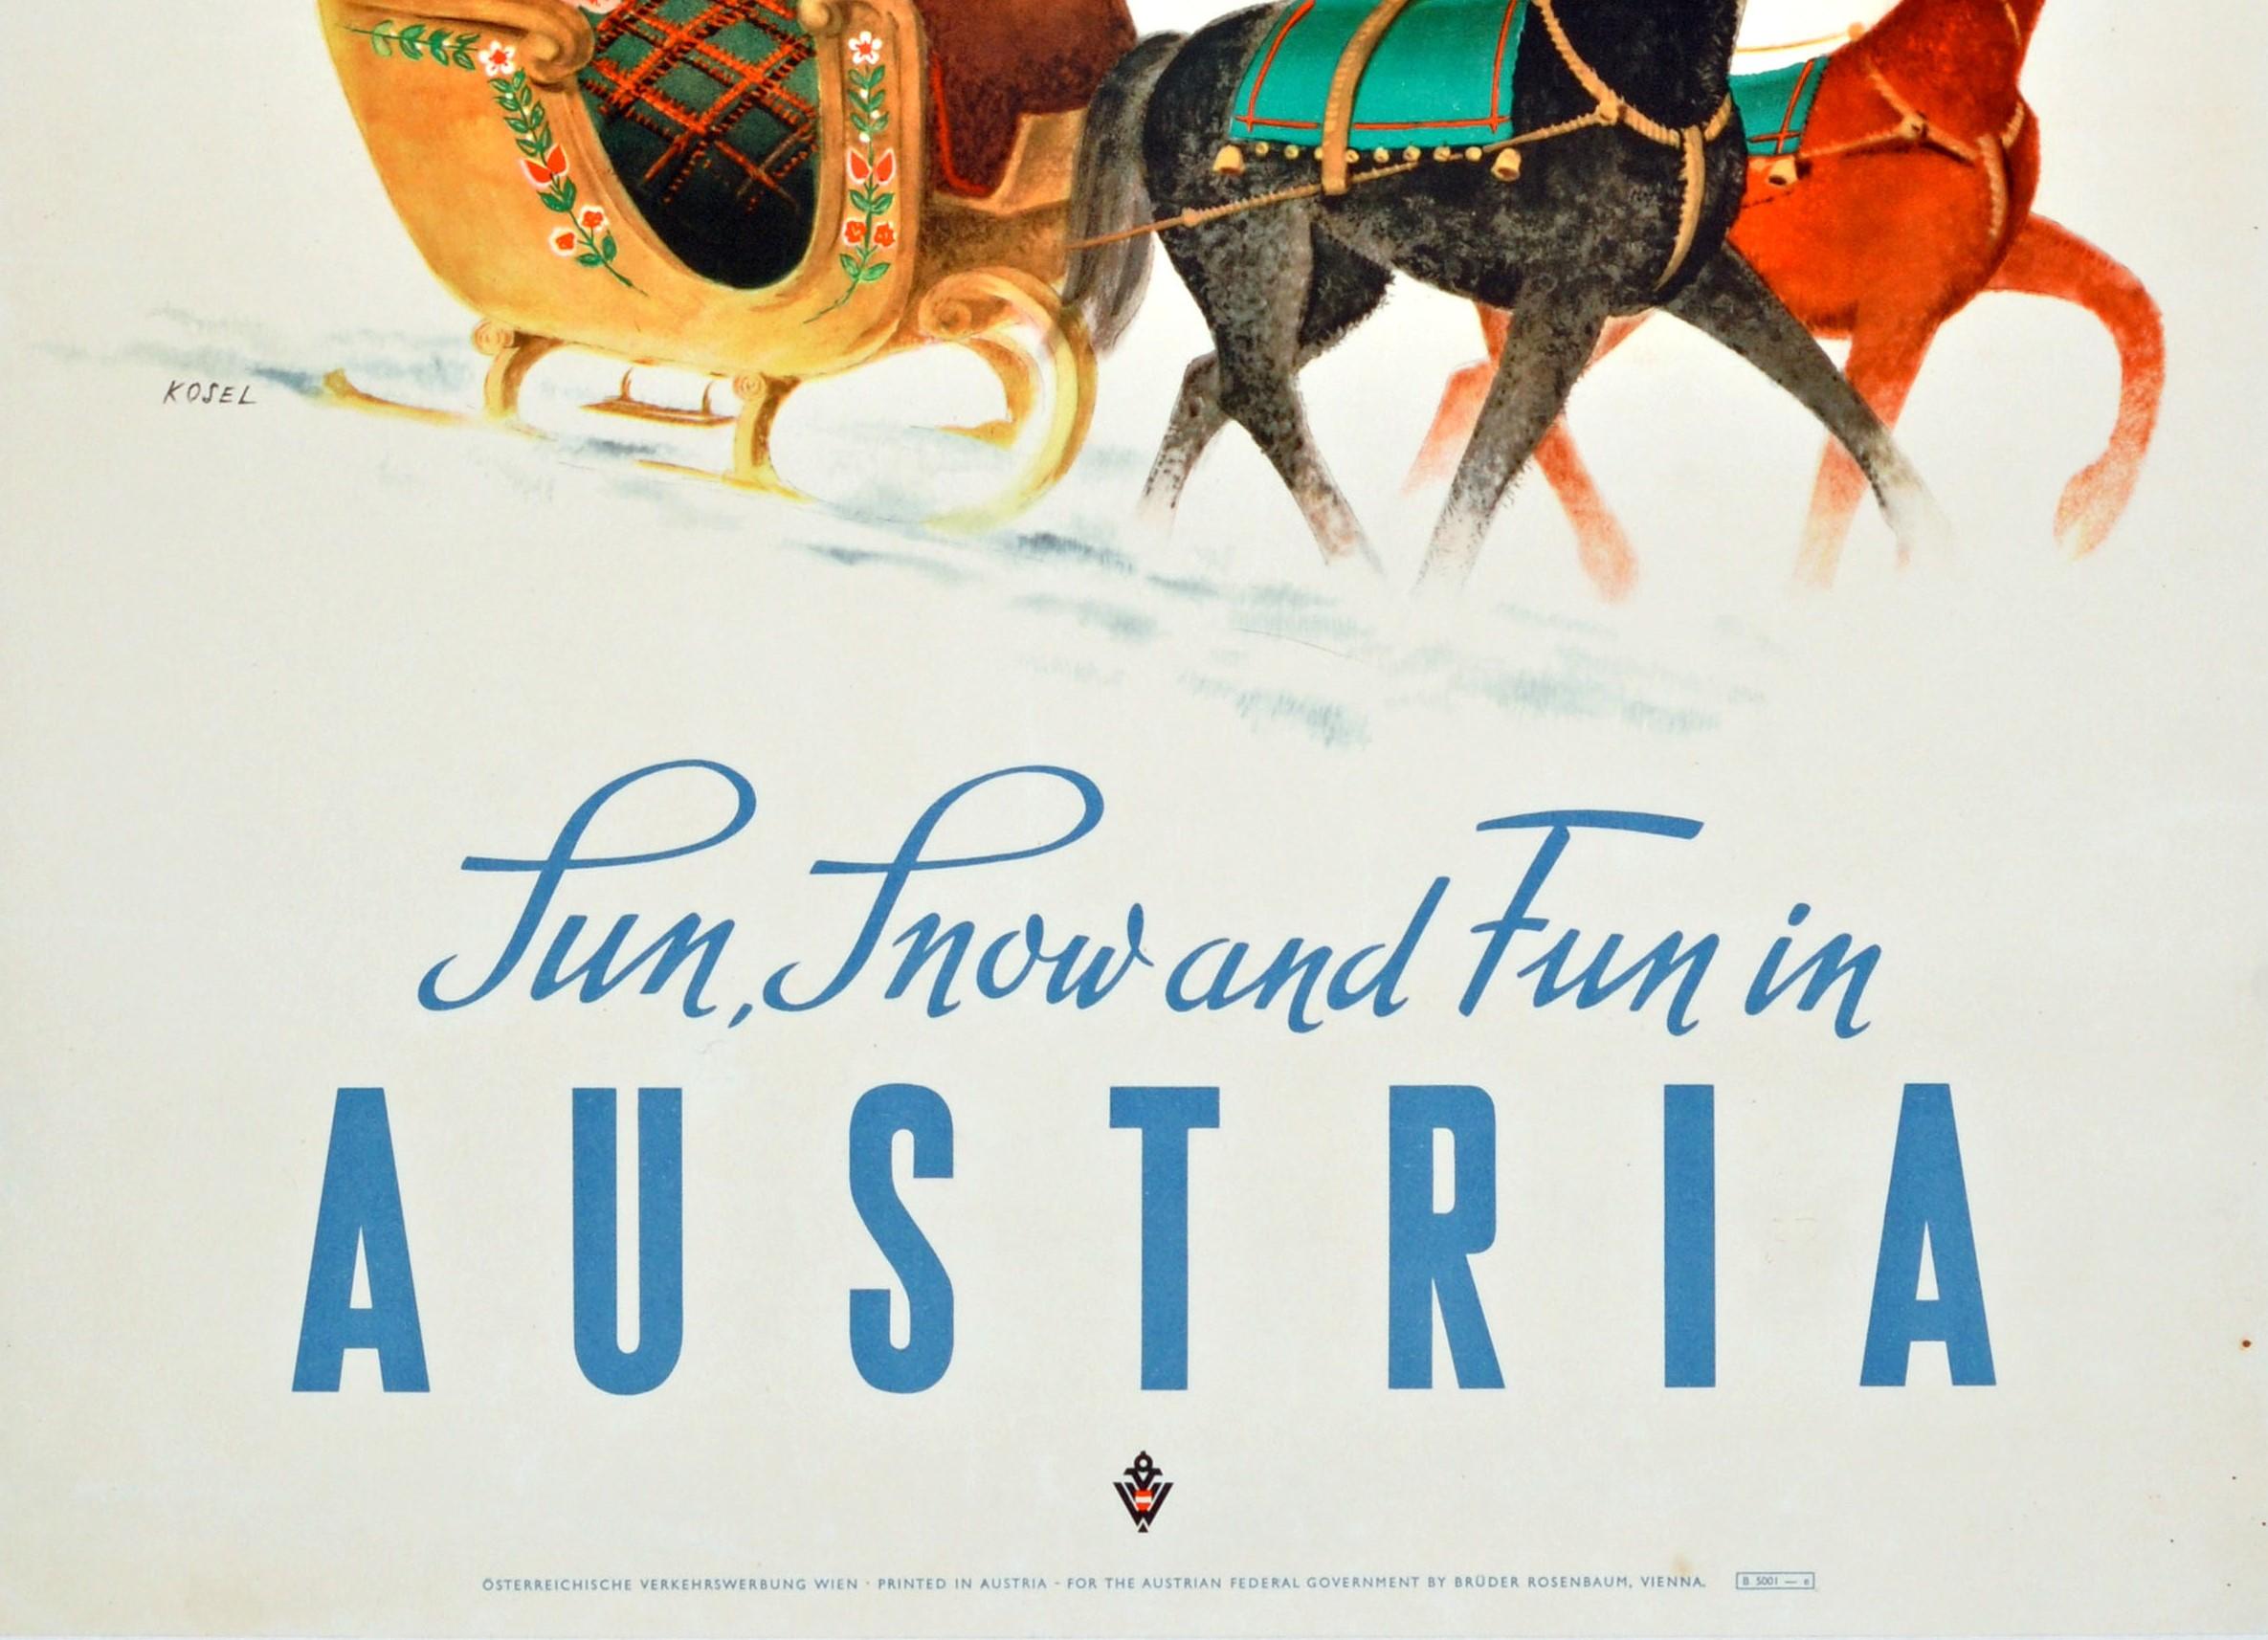 Original Vintage Reiseplakat für Österreich / Österreich von KLM - Fly KLM The Skiers' Airline mit John und Lois Jay - Sun, Snow and Fun in Austria. Großartiges Bild einer verschneiten Szene des österreichischen Künstlers Hermann Kosel (1896-1983)